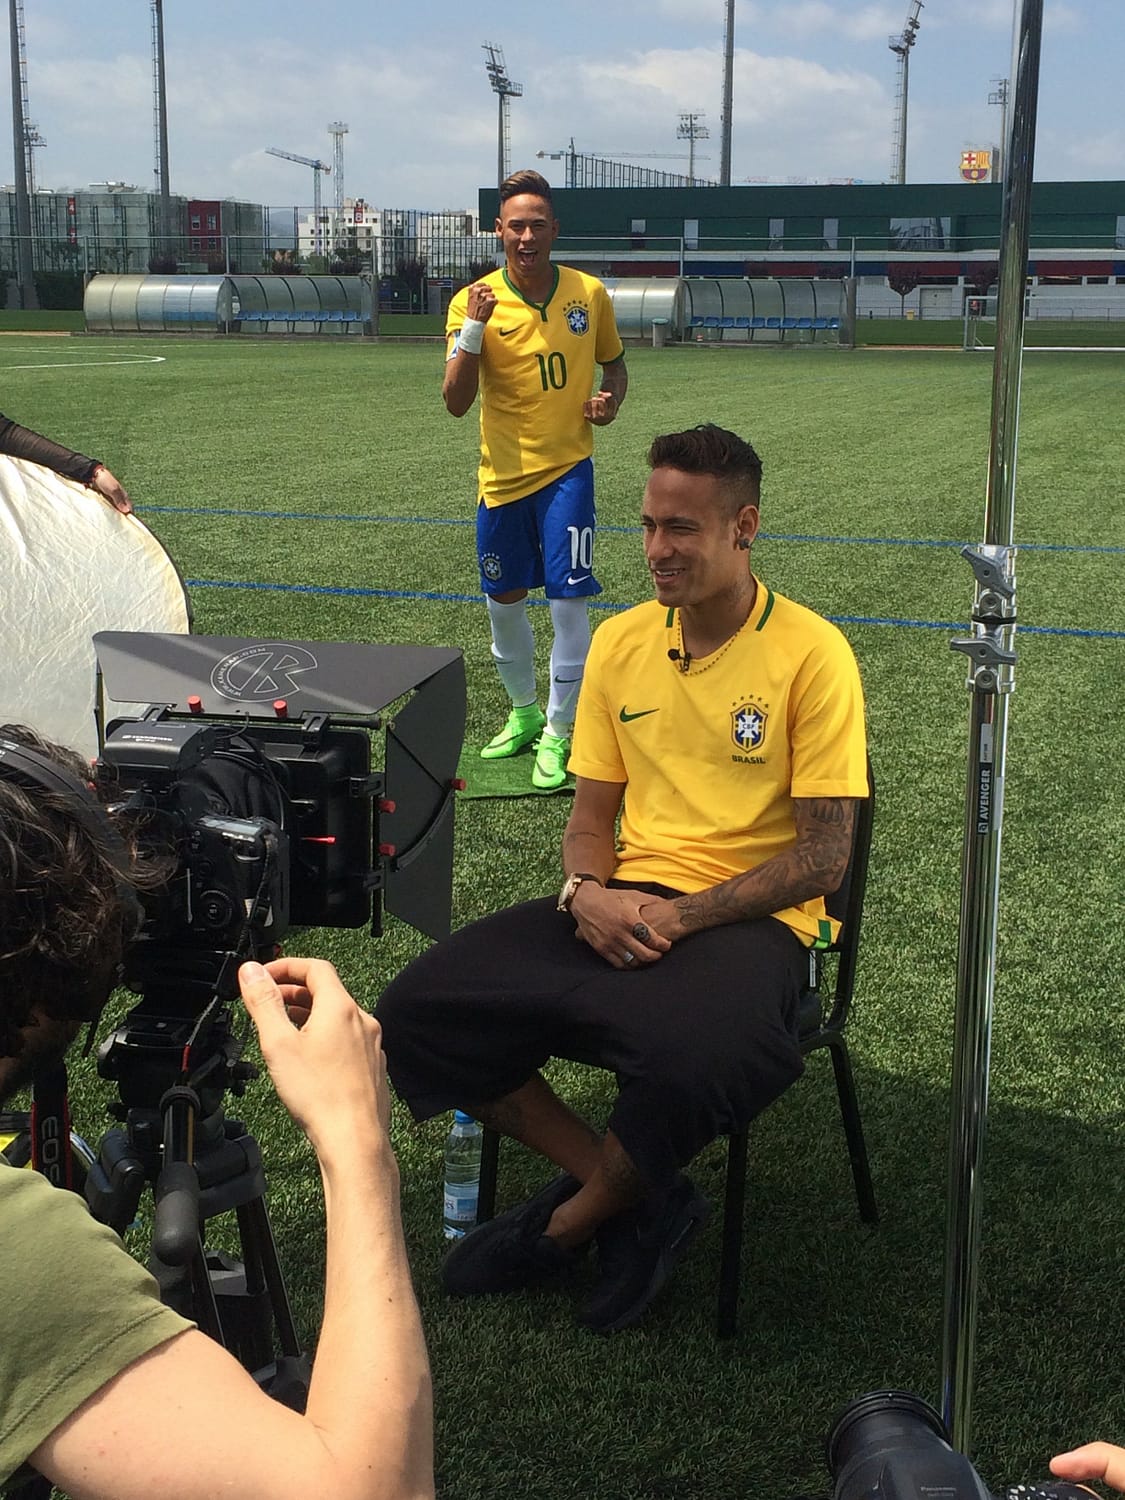 Futbolista Neymar durante una entrevista, Detrás de la escena